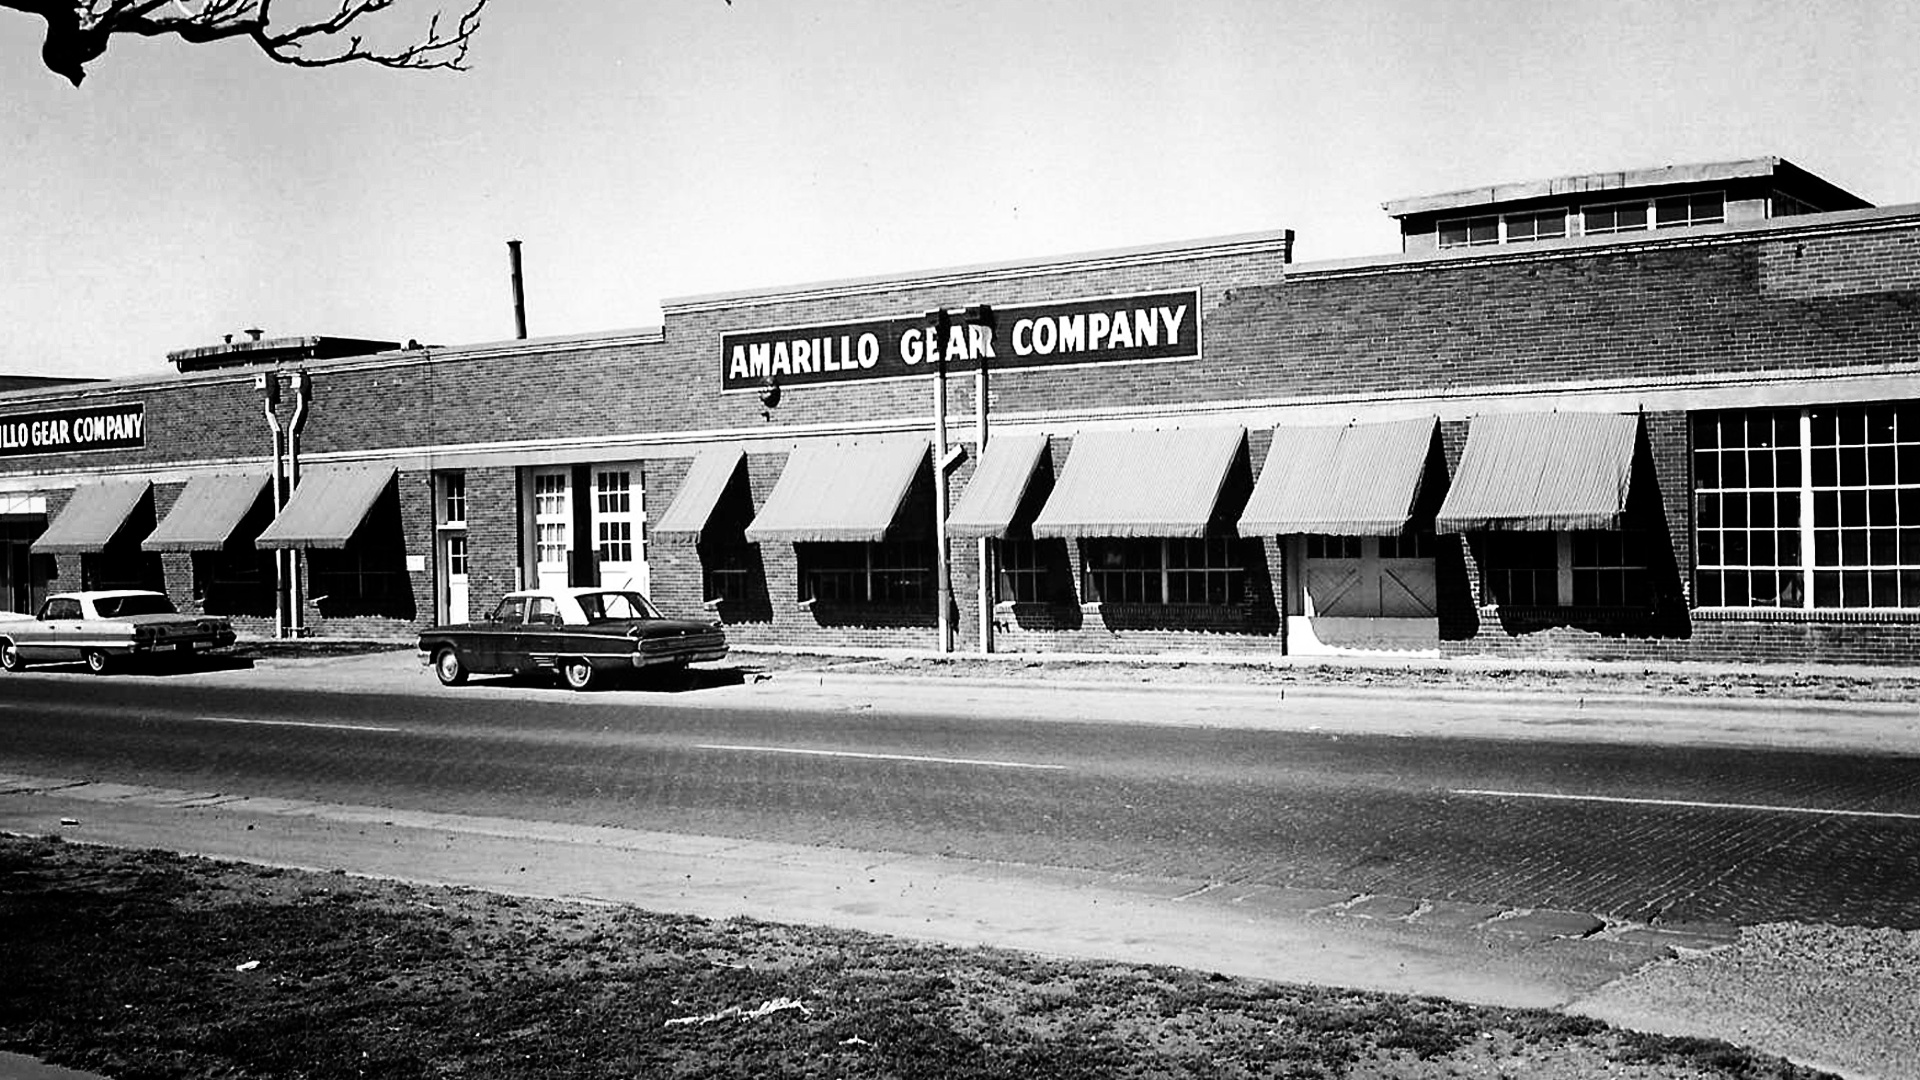 Amarillo Gear Company original building